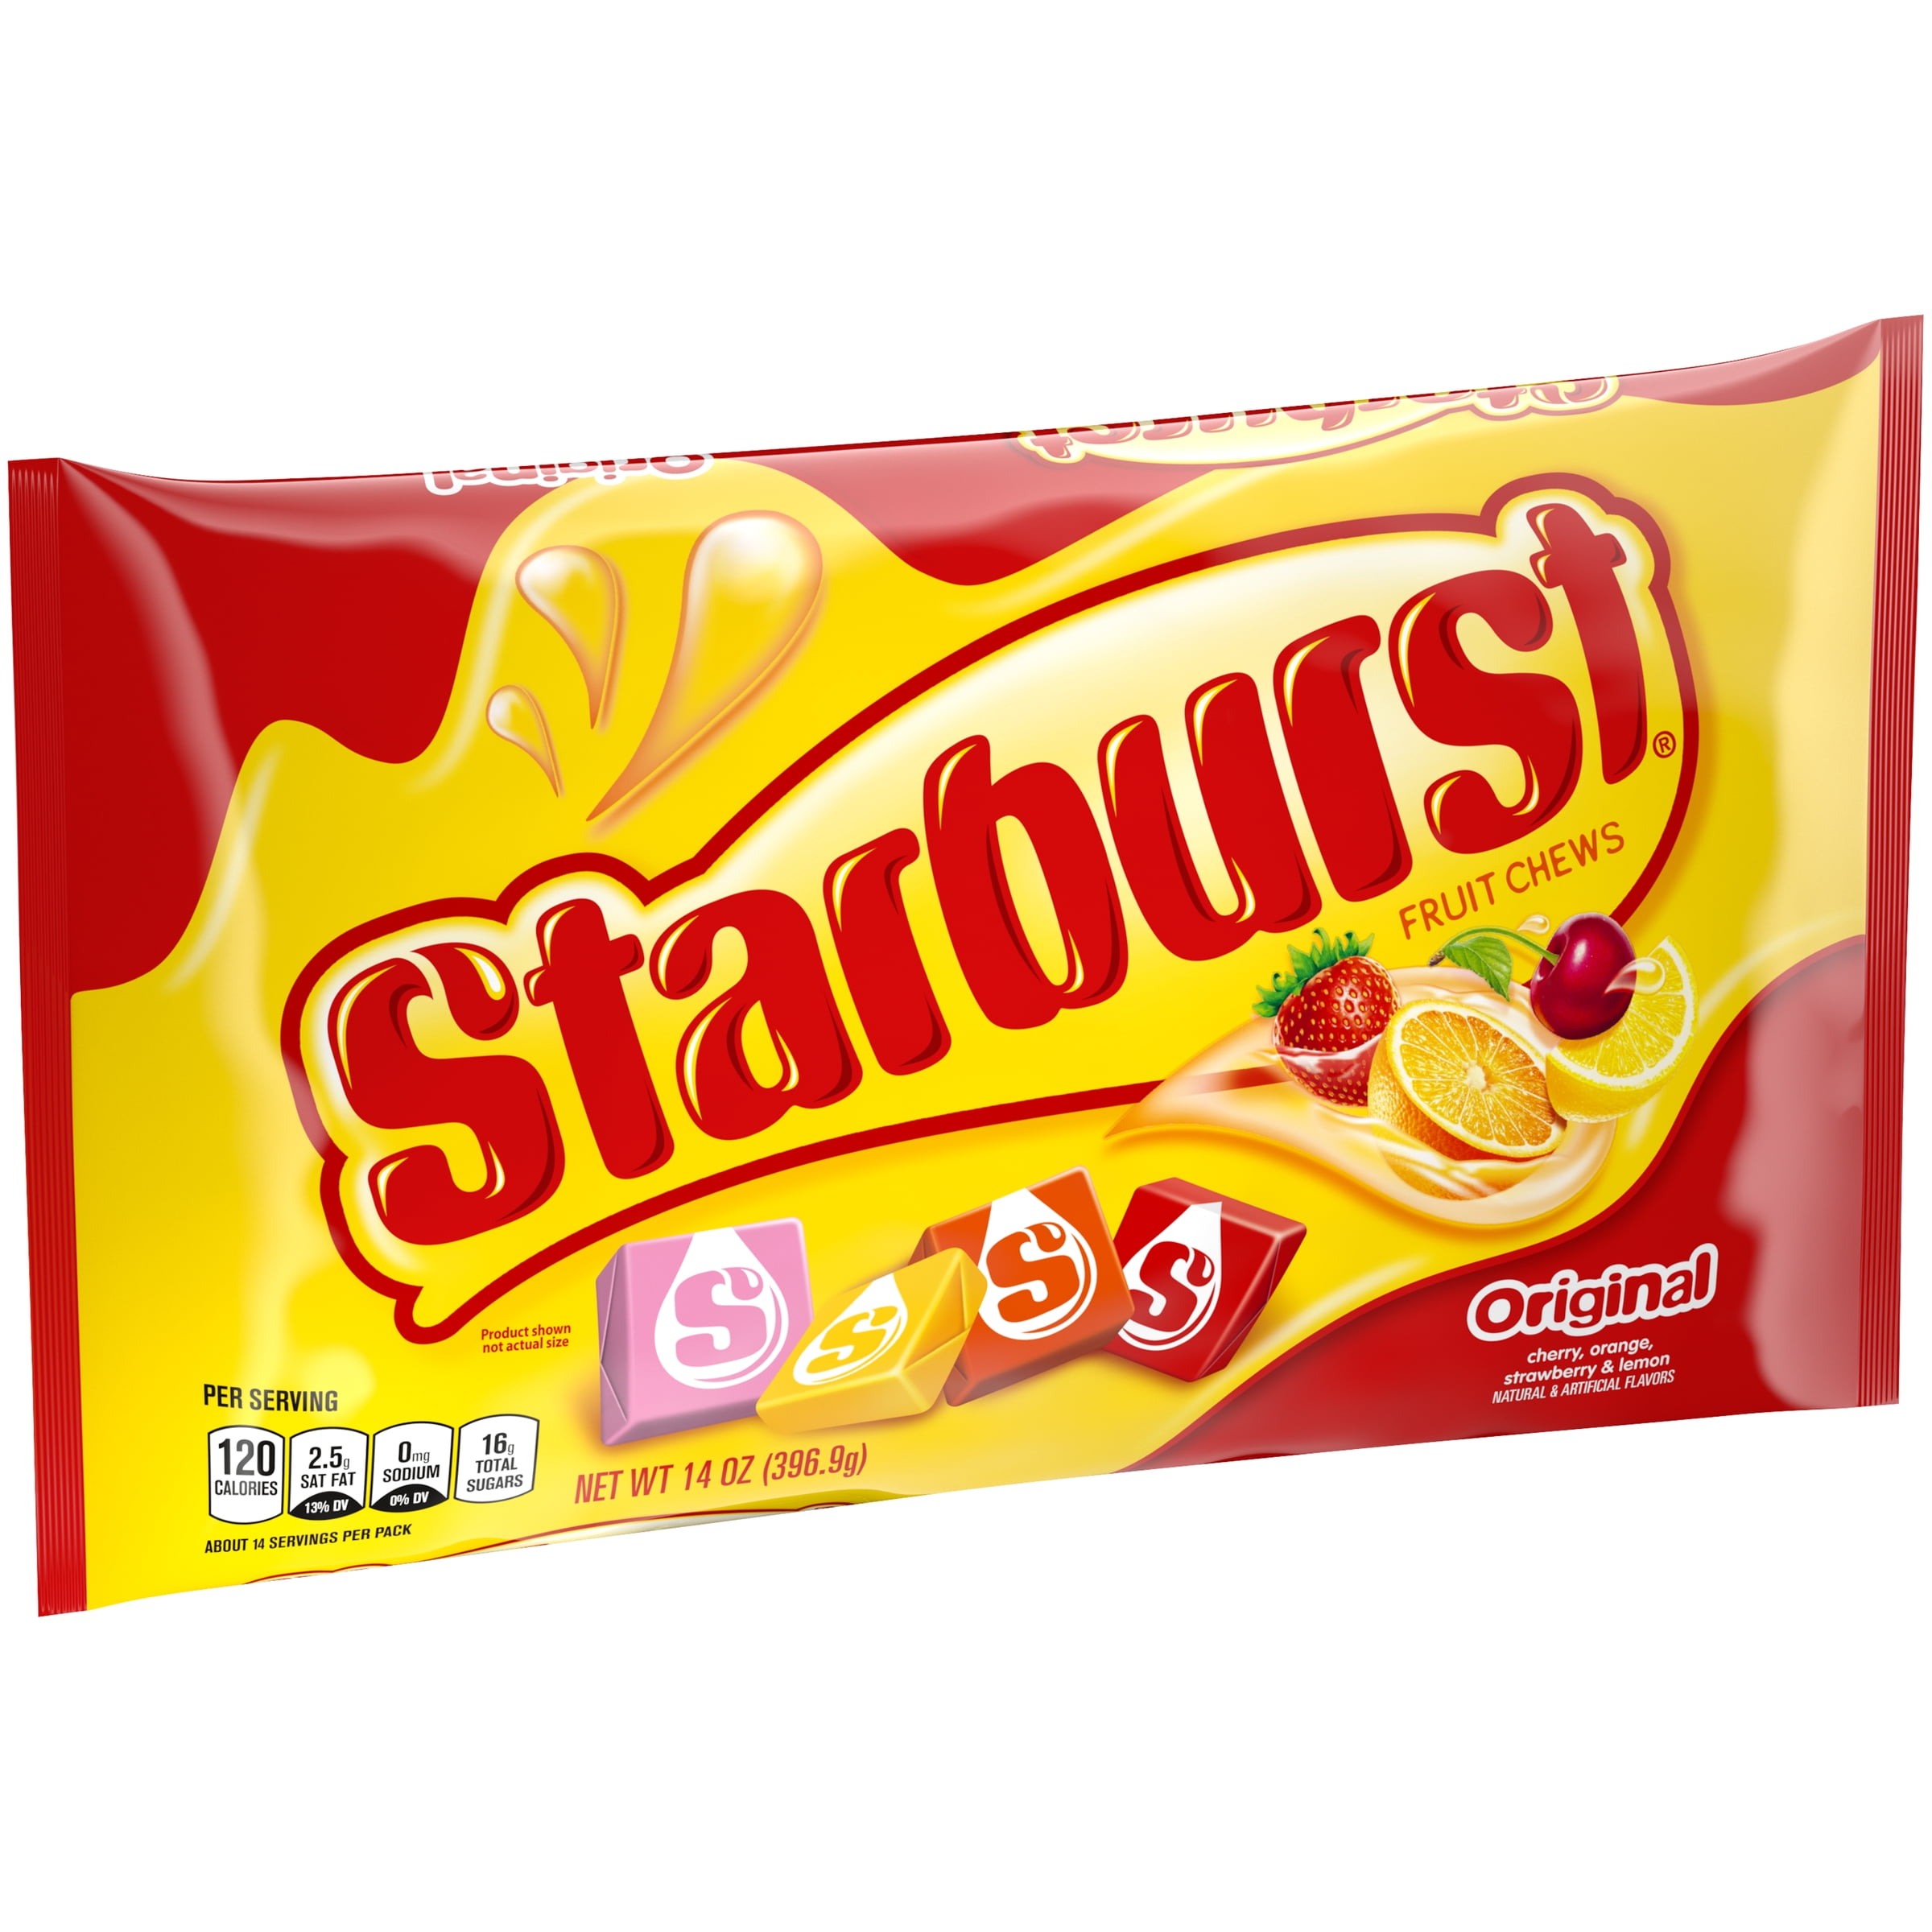 Starburst candy each